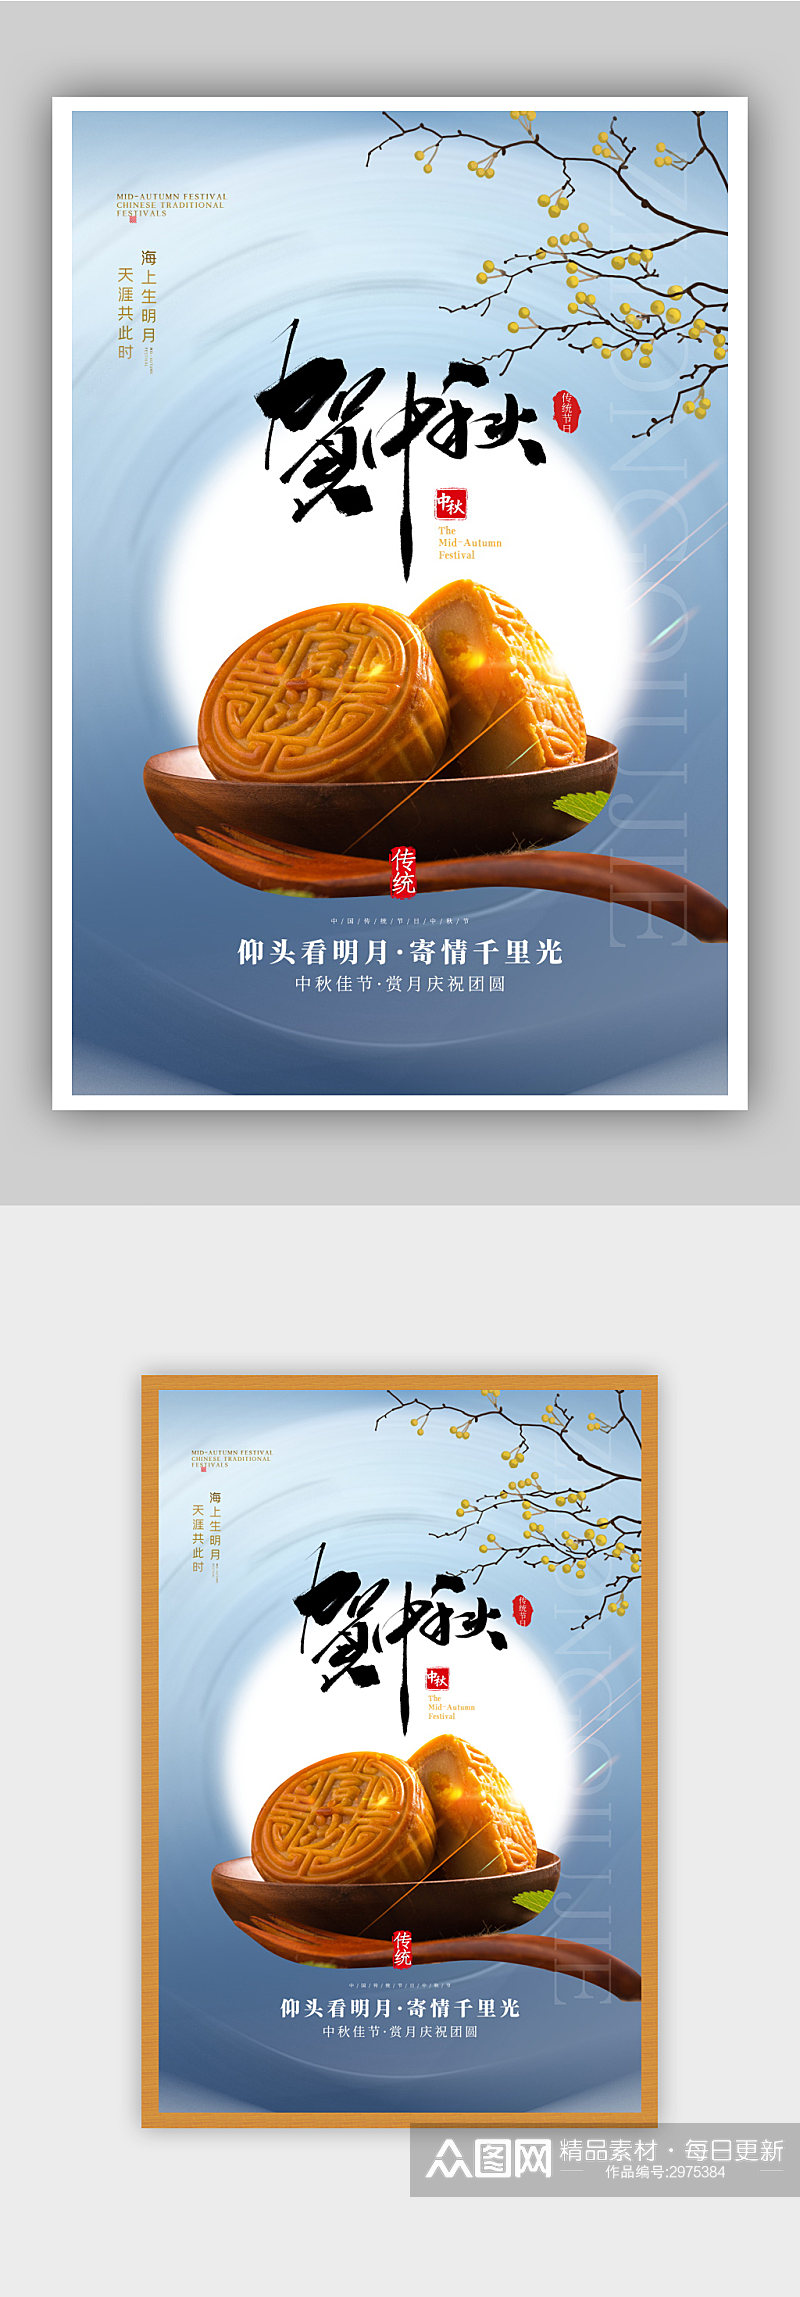 大气中秋节宣传海报素材